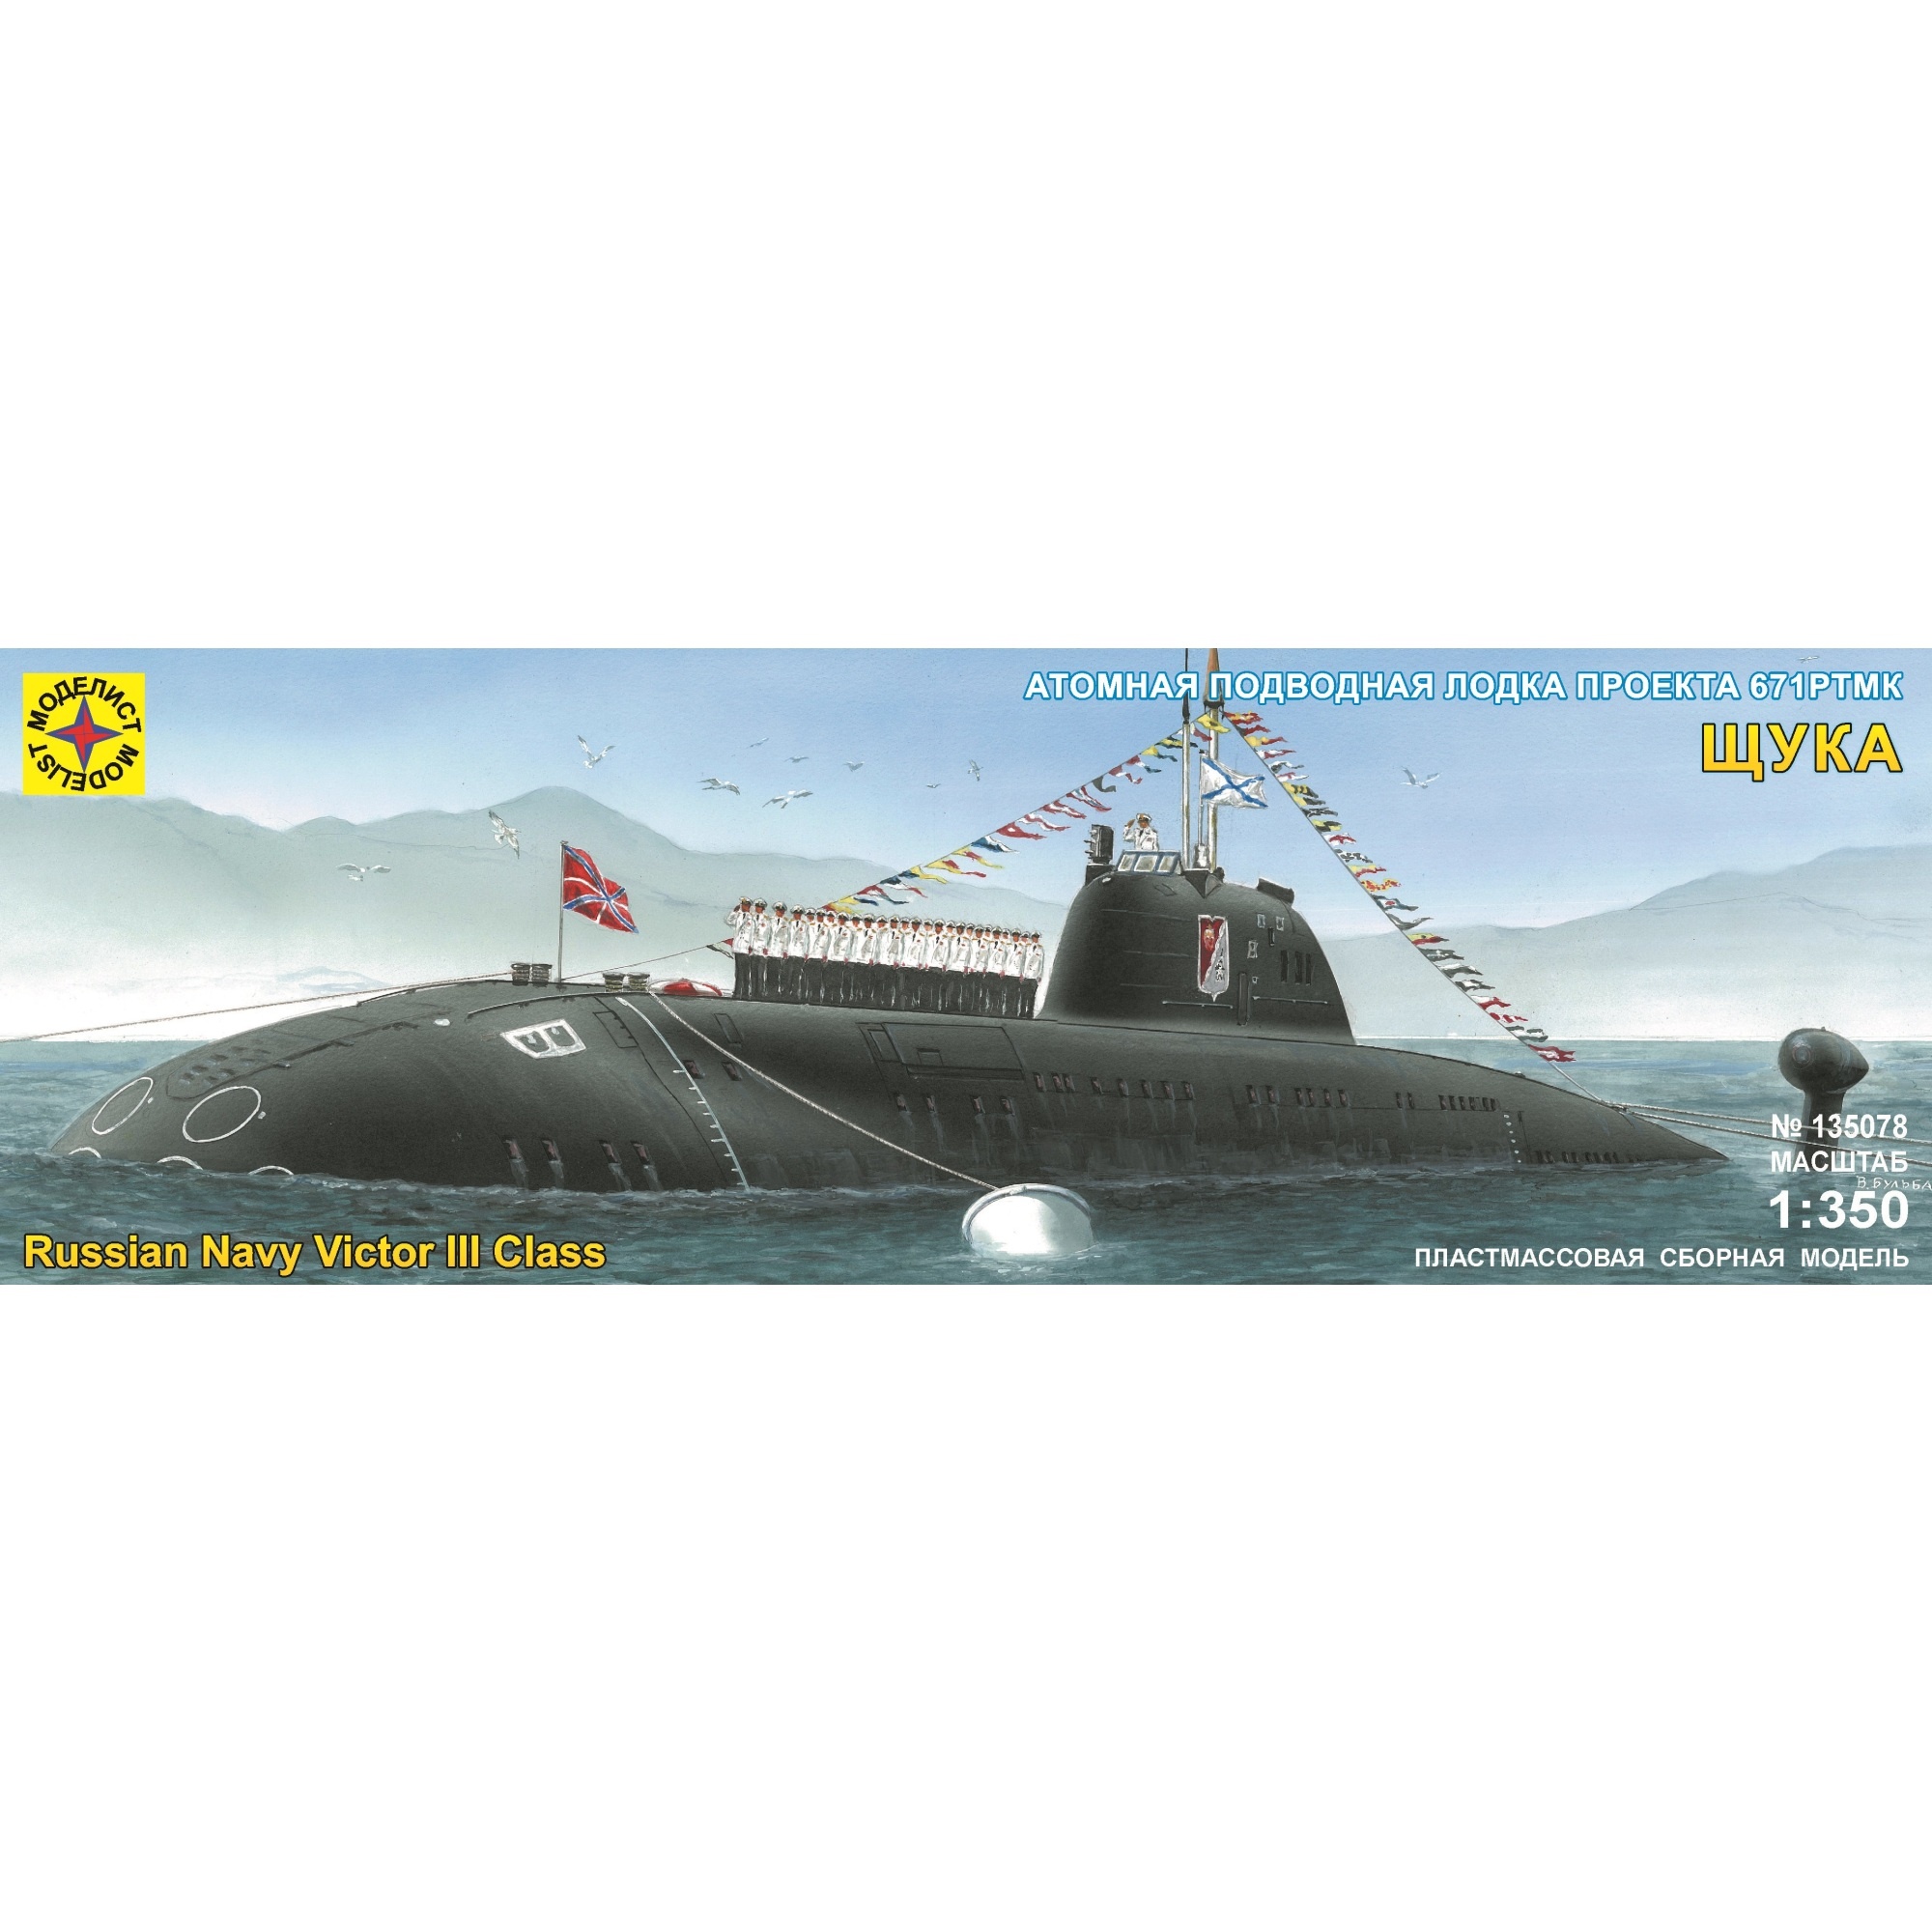 Сборная модель "Подводная лодка проекта 671РТМК Щука" (1:350)